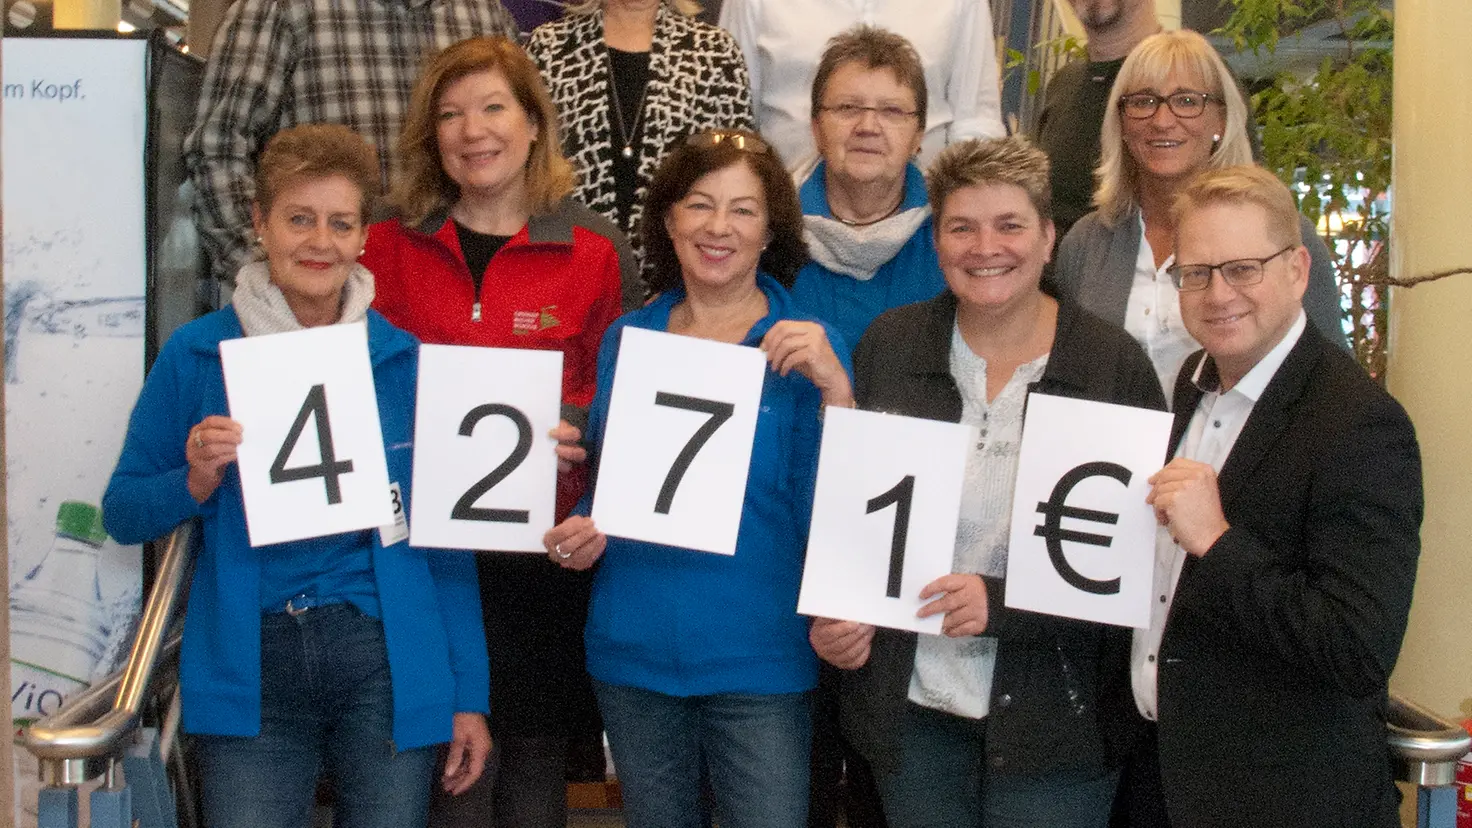 Mehrere Personen stehen auf einer Treppe für ein Gruppenfotos zusammen und halten die Zahlen 4271 € in den Händen.